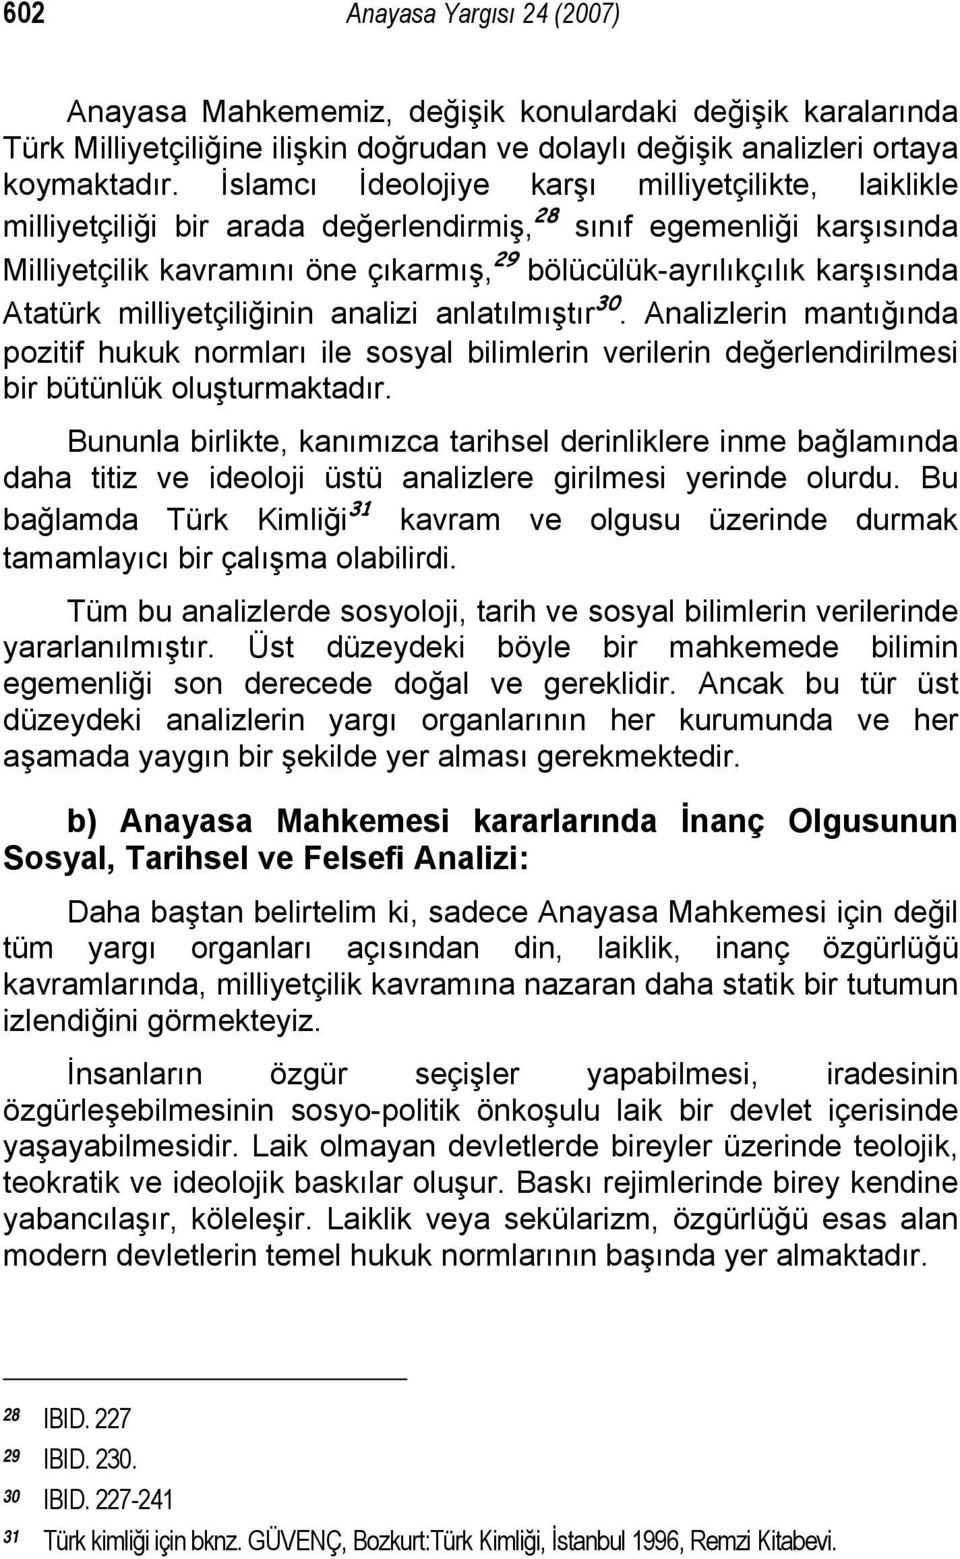 Atatürk milliyetçiliğinin analizi anlatılmıştır 30. Analizlerin mantığında pozitif hukuk normları ile sosyal bilimlerin verilerin değerlendirilmesi bir bütünlük oluşturmaktadır.